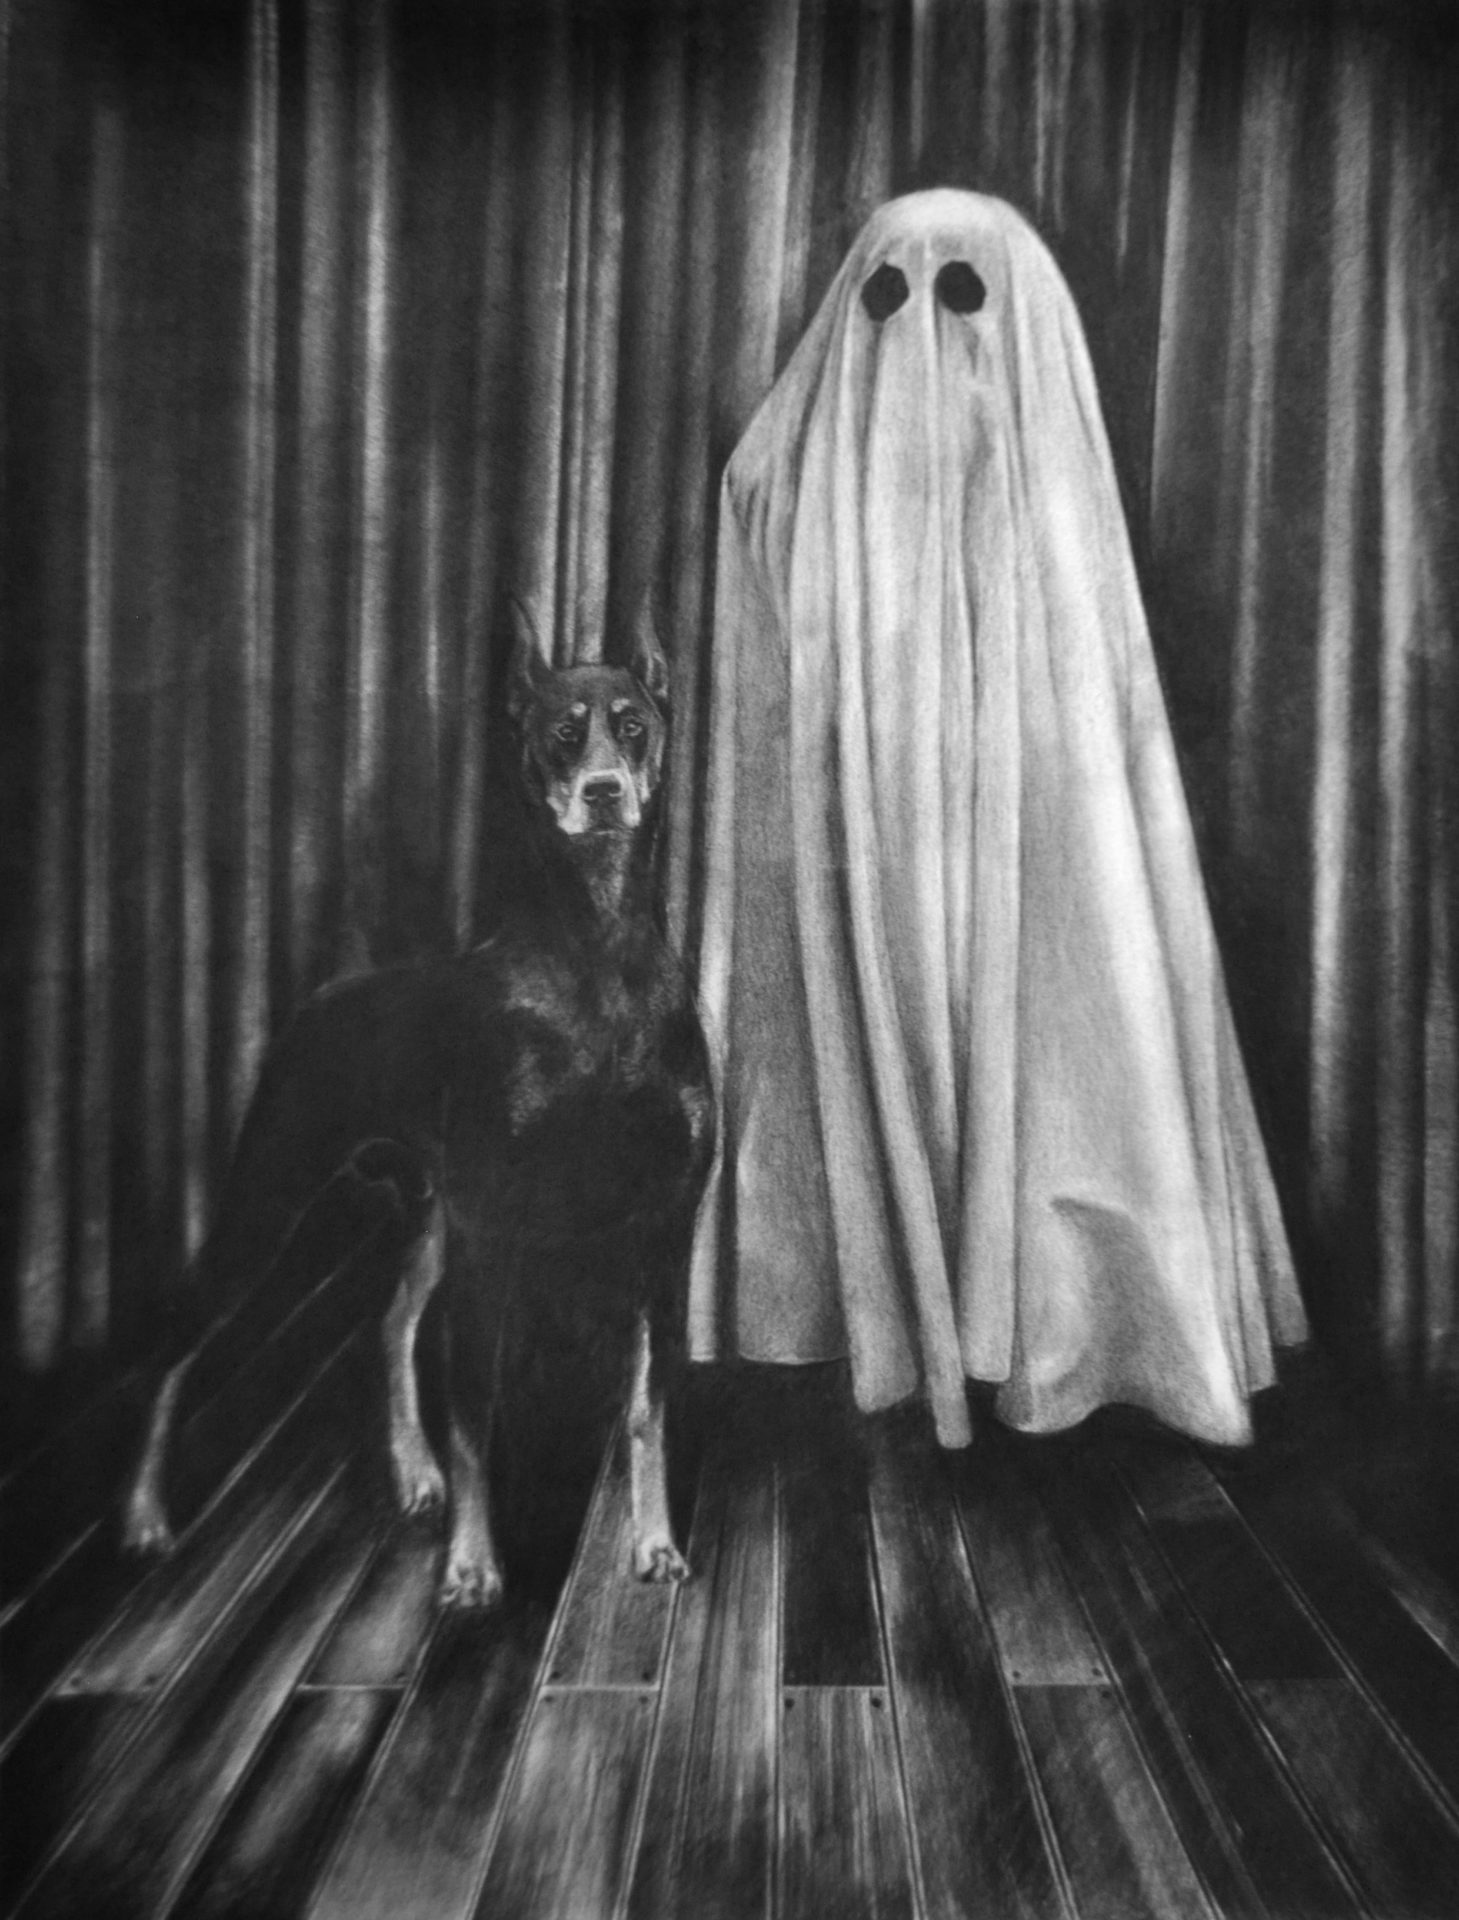 Dog, fusain sur papier, 50 x 65 cm, 2015, Collection privée